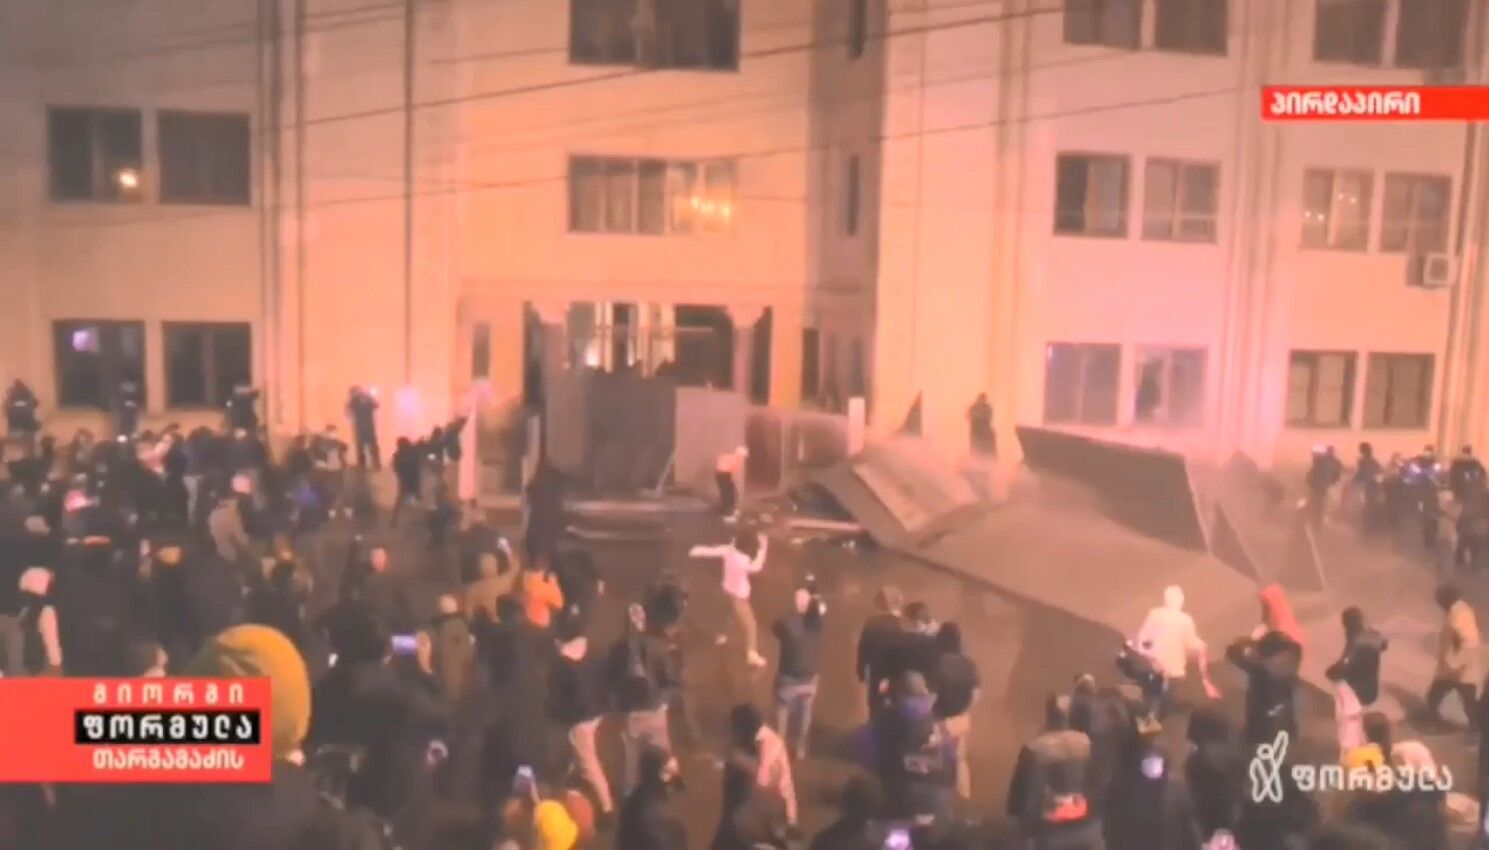 Протести в Грузії: мітингувальники штурмують будівлю парламенту - відео (оновлення)